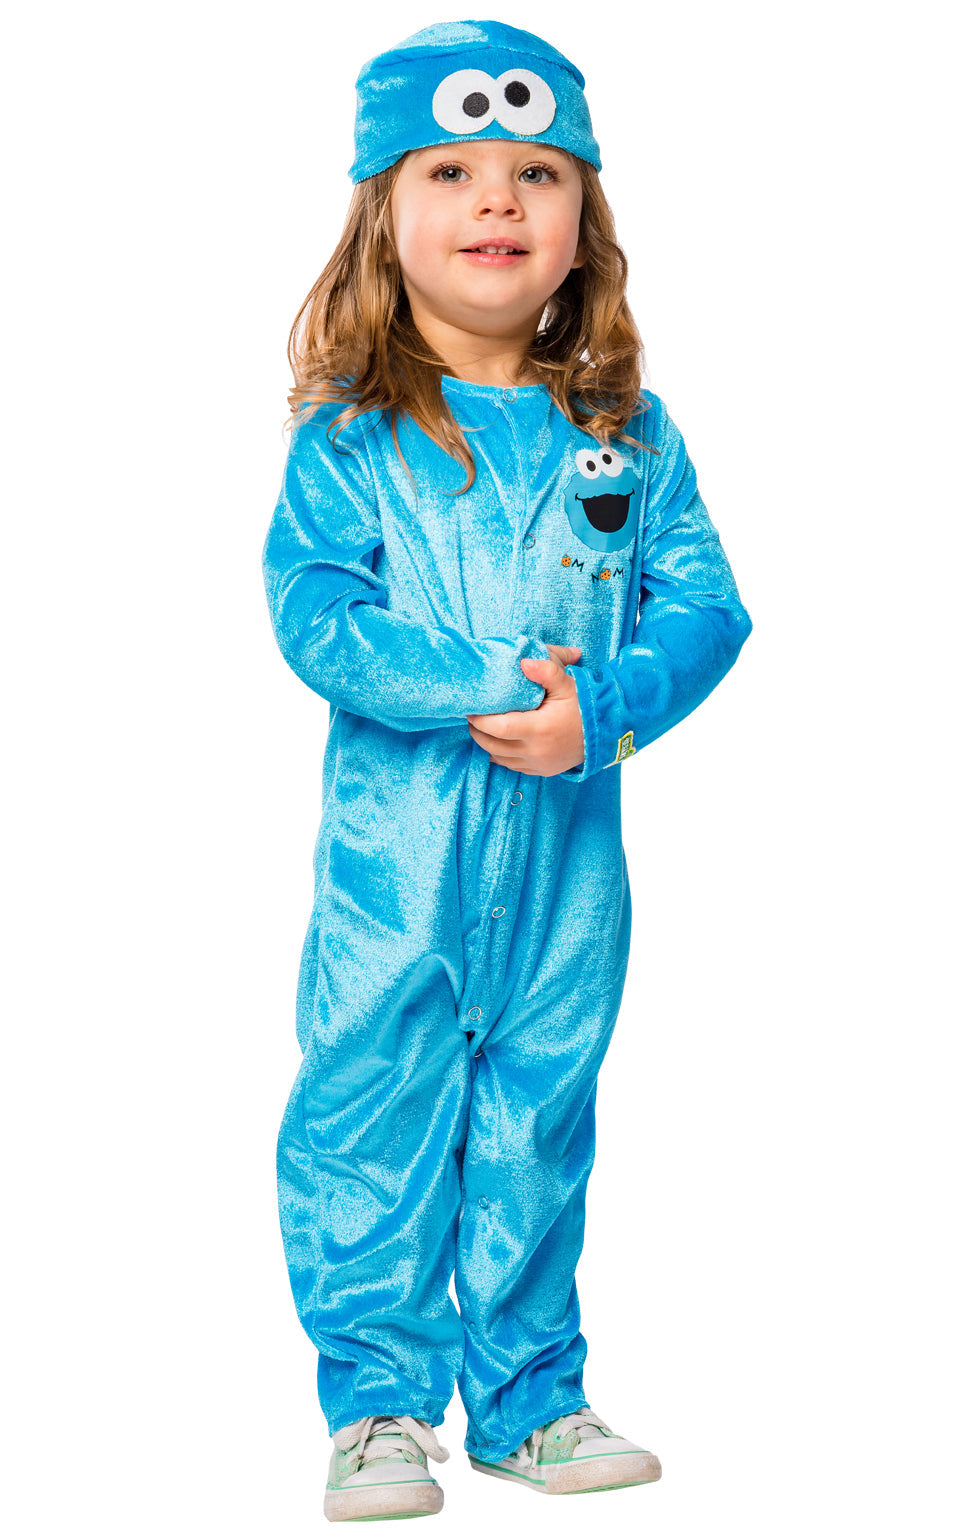 Sesame Street - Cookie Monster Infant_1 rub-3011001224